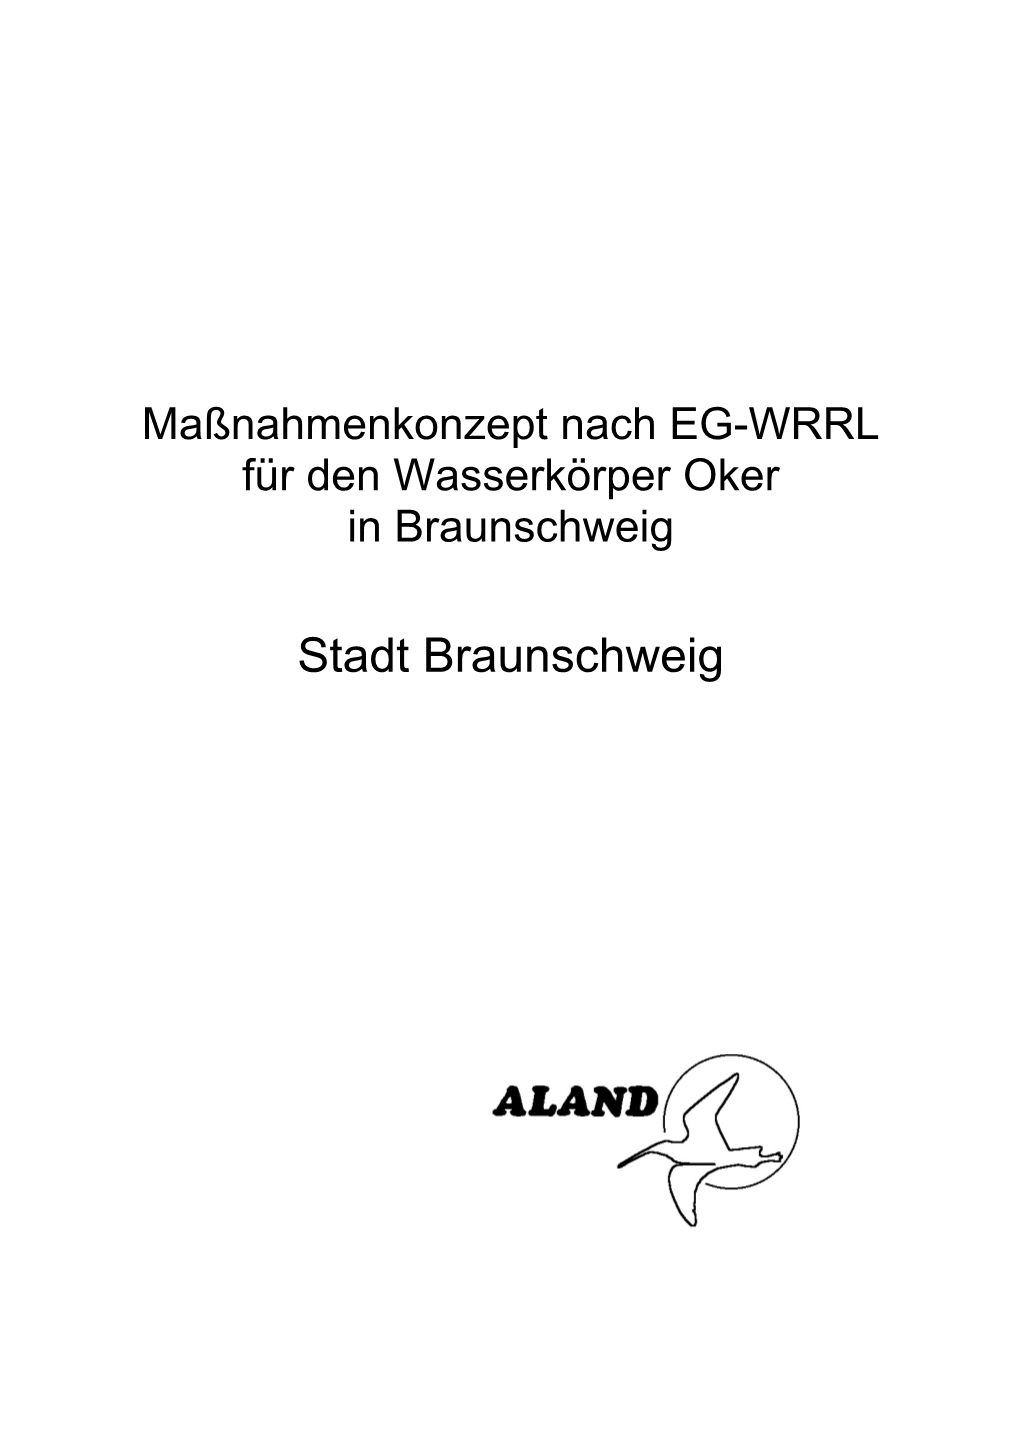 Maßnahmenkonzept Nach EG-WRRL Für Den Wasserkörper Oker in Braunschweig